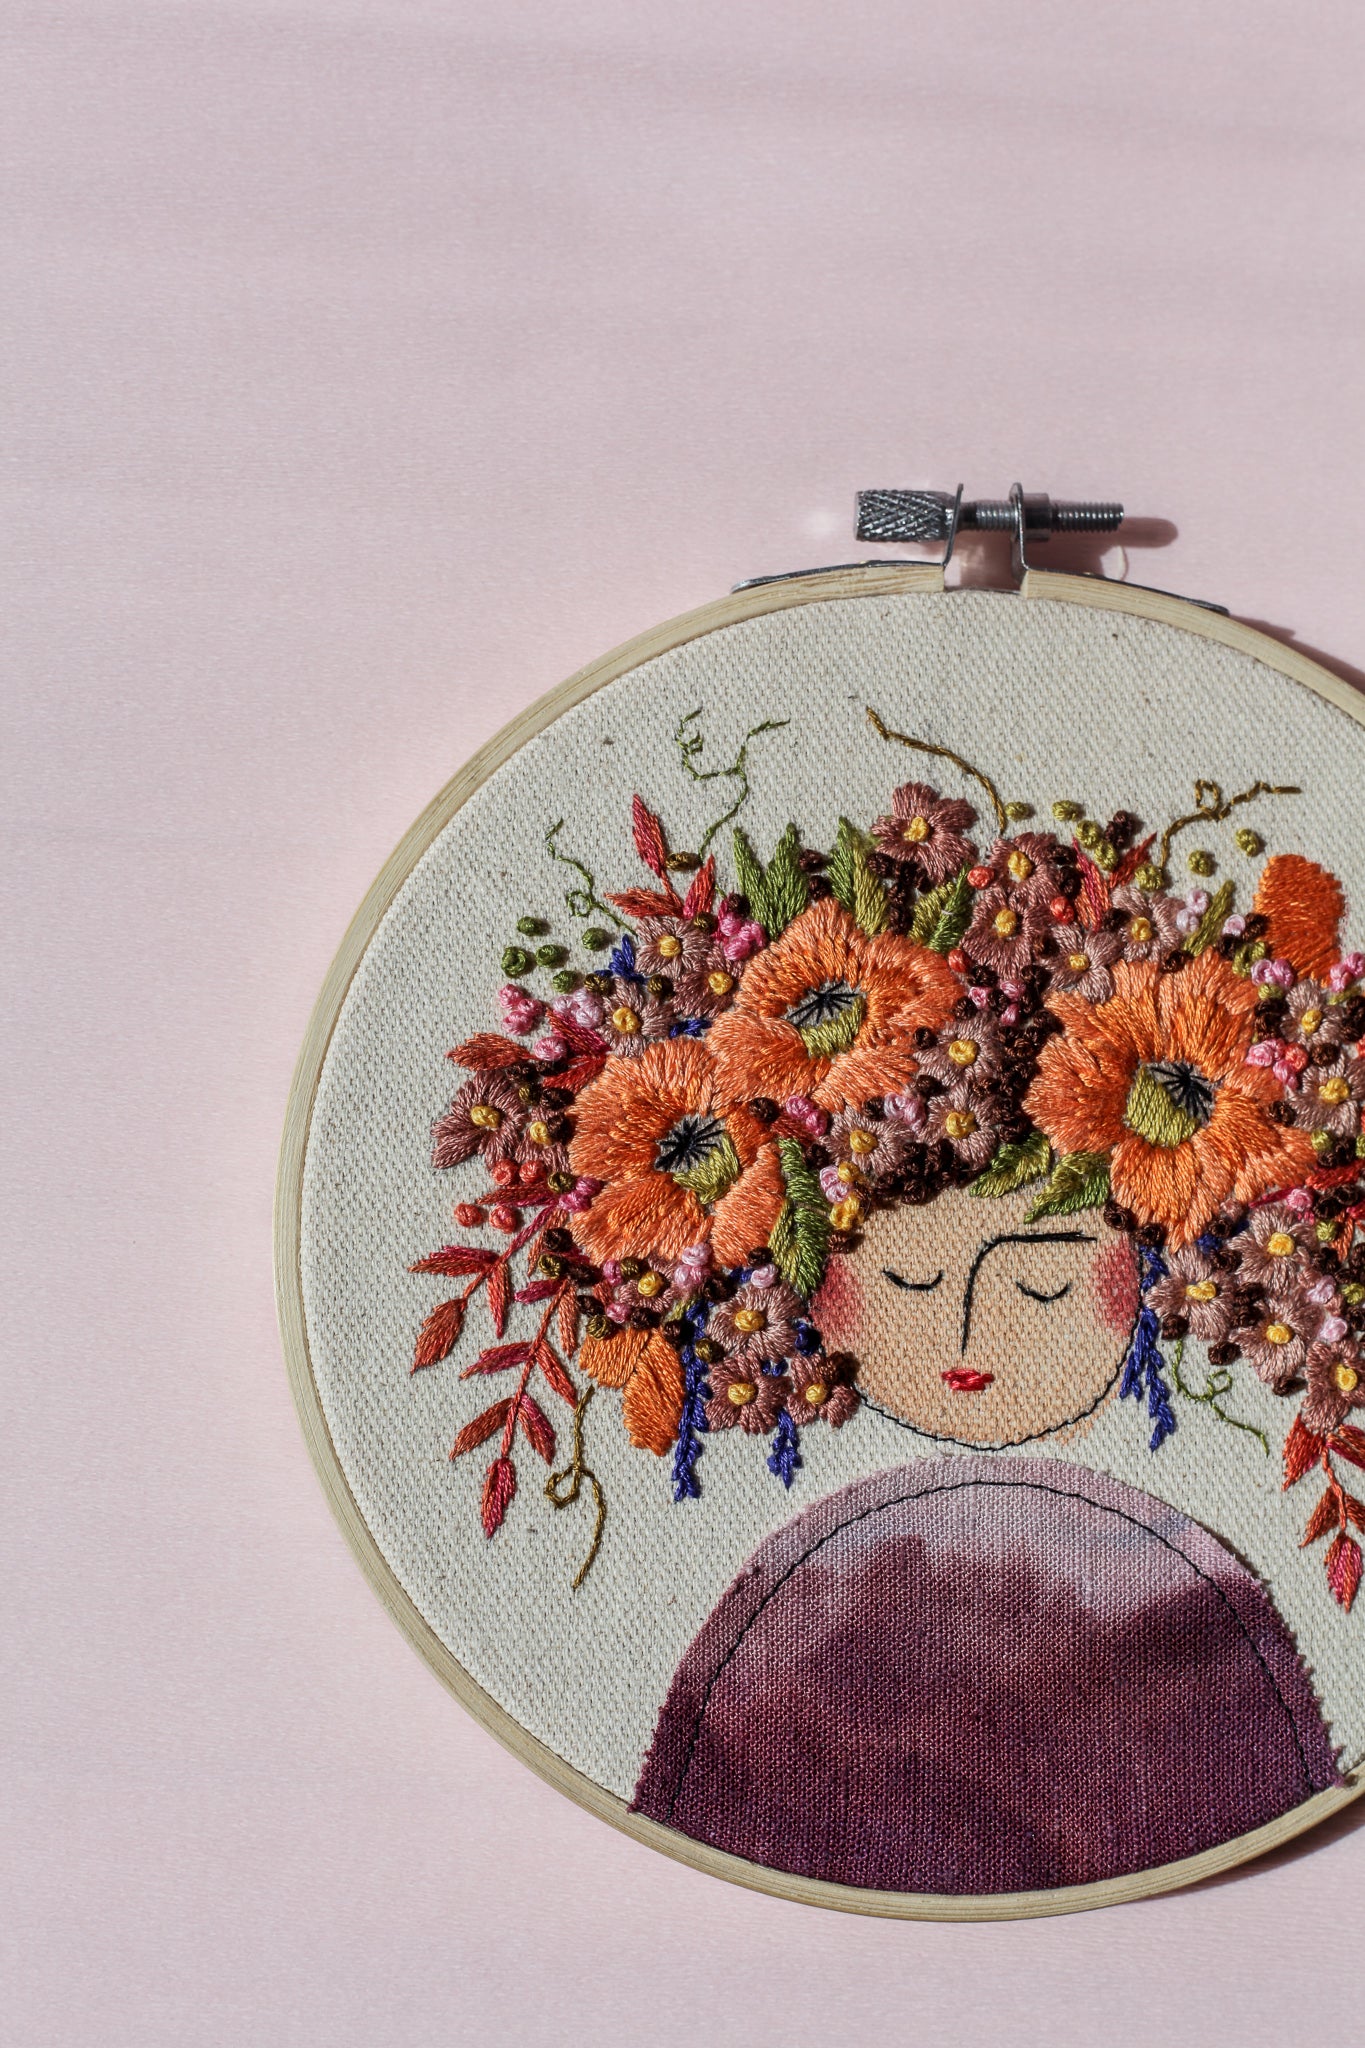 Embroidery Hoop Art 